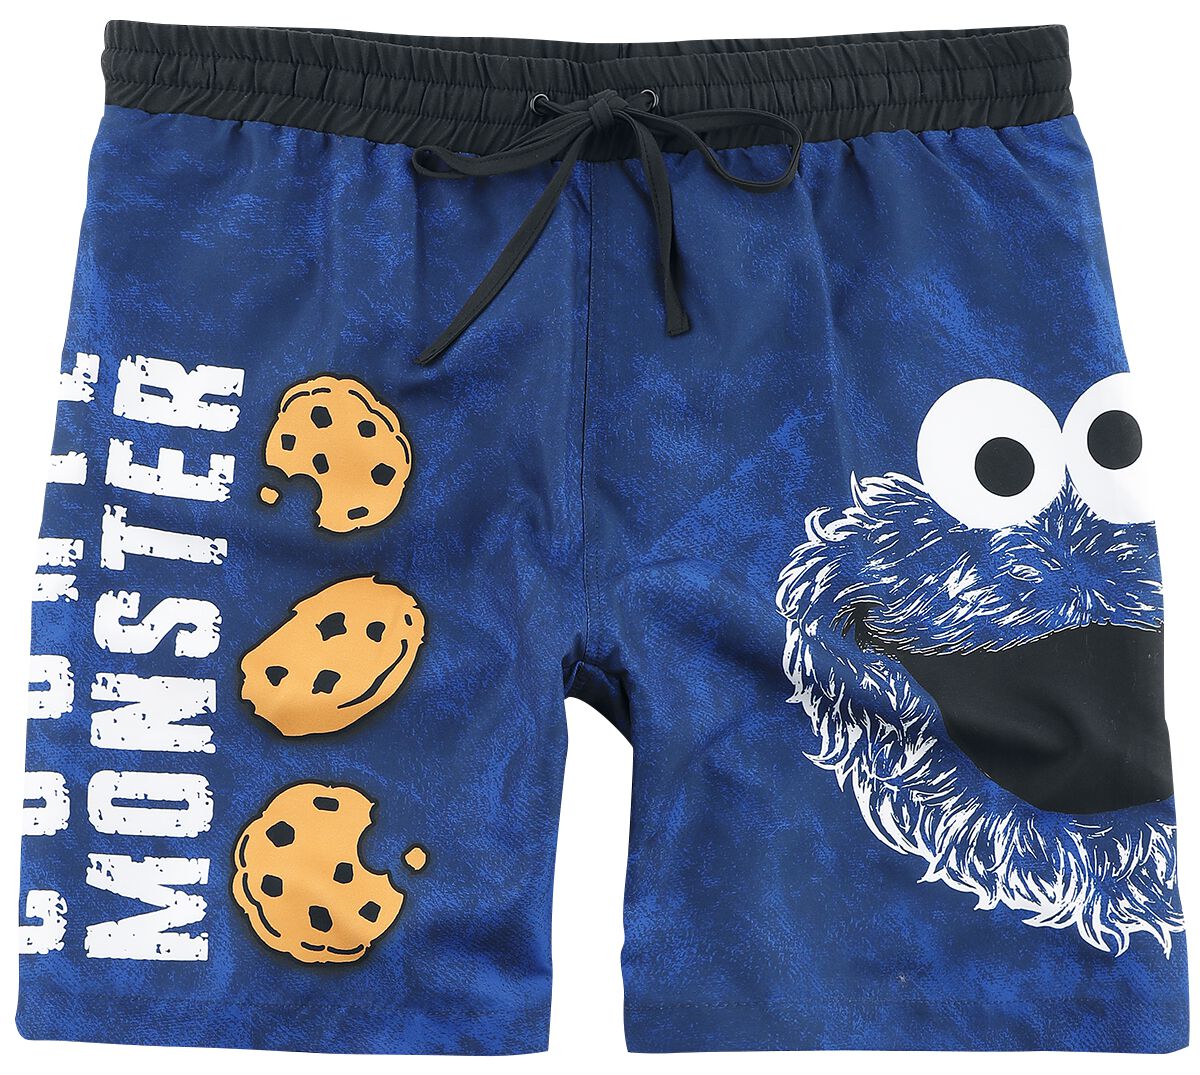 Sesamstraße Badeshort - Cookie Monster - Face - M bis 3XL - für Männer - Größe XXL - blau  - EMP exklusives Merchandise!